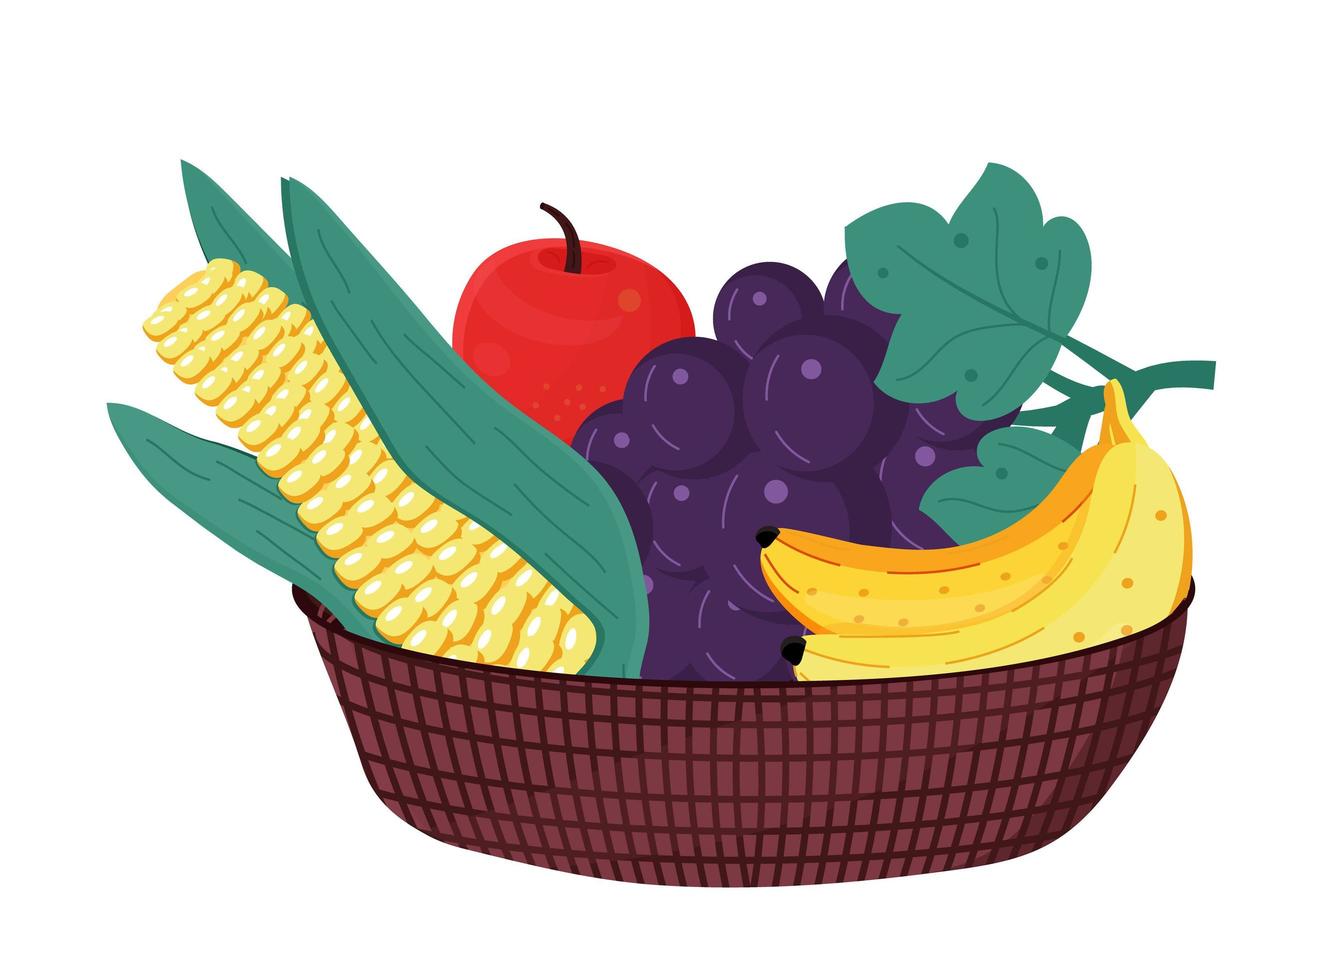 frutas en un tazón de madera. maíz, plátano, manzana, uva están dentro de la canasta. alimentación saludable, concepto de cosecha vector